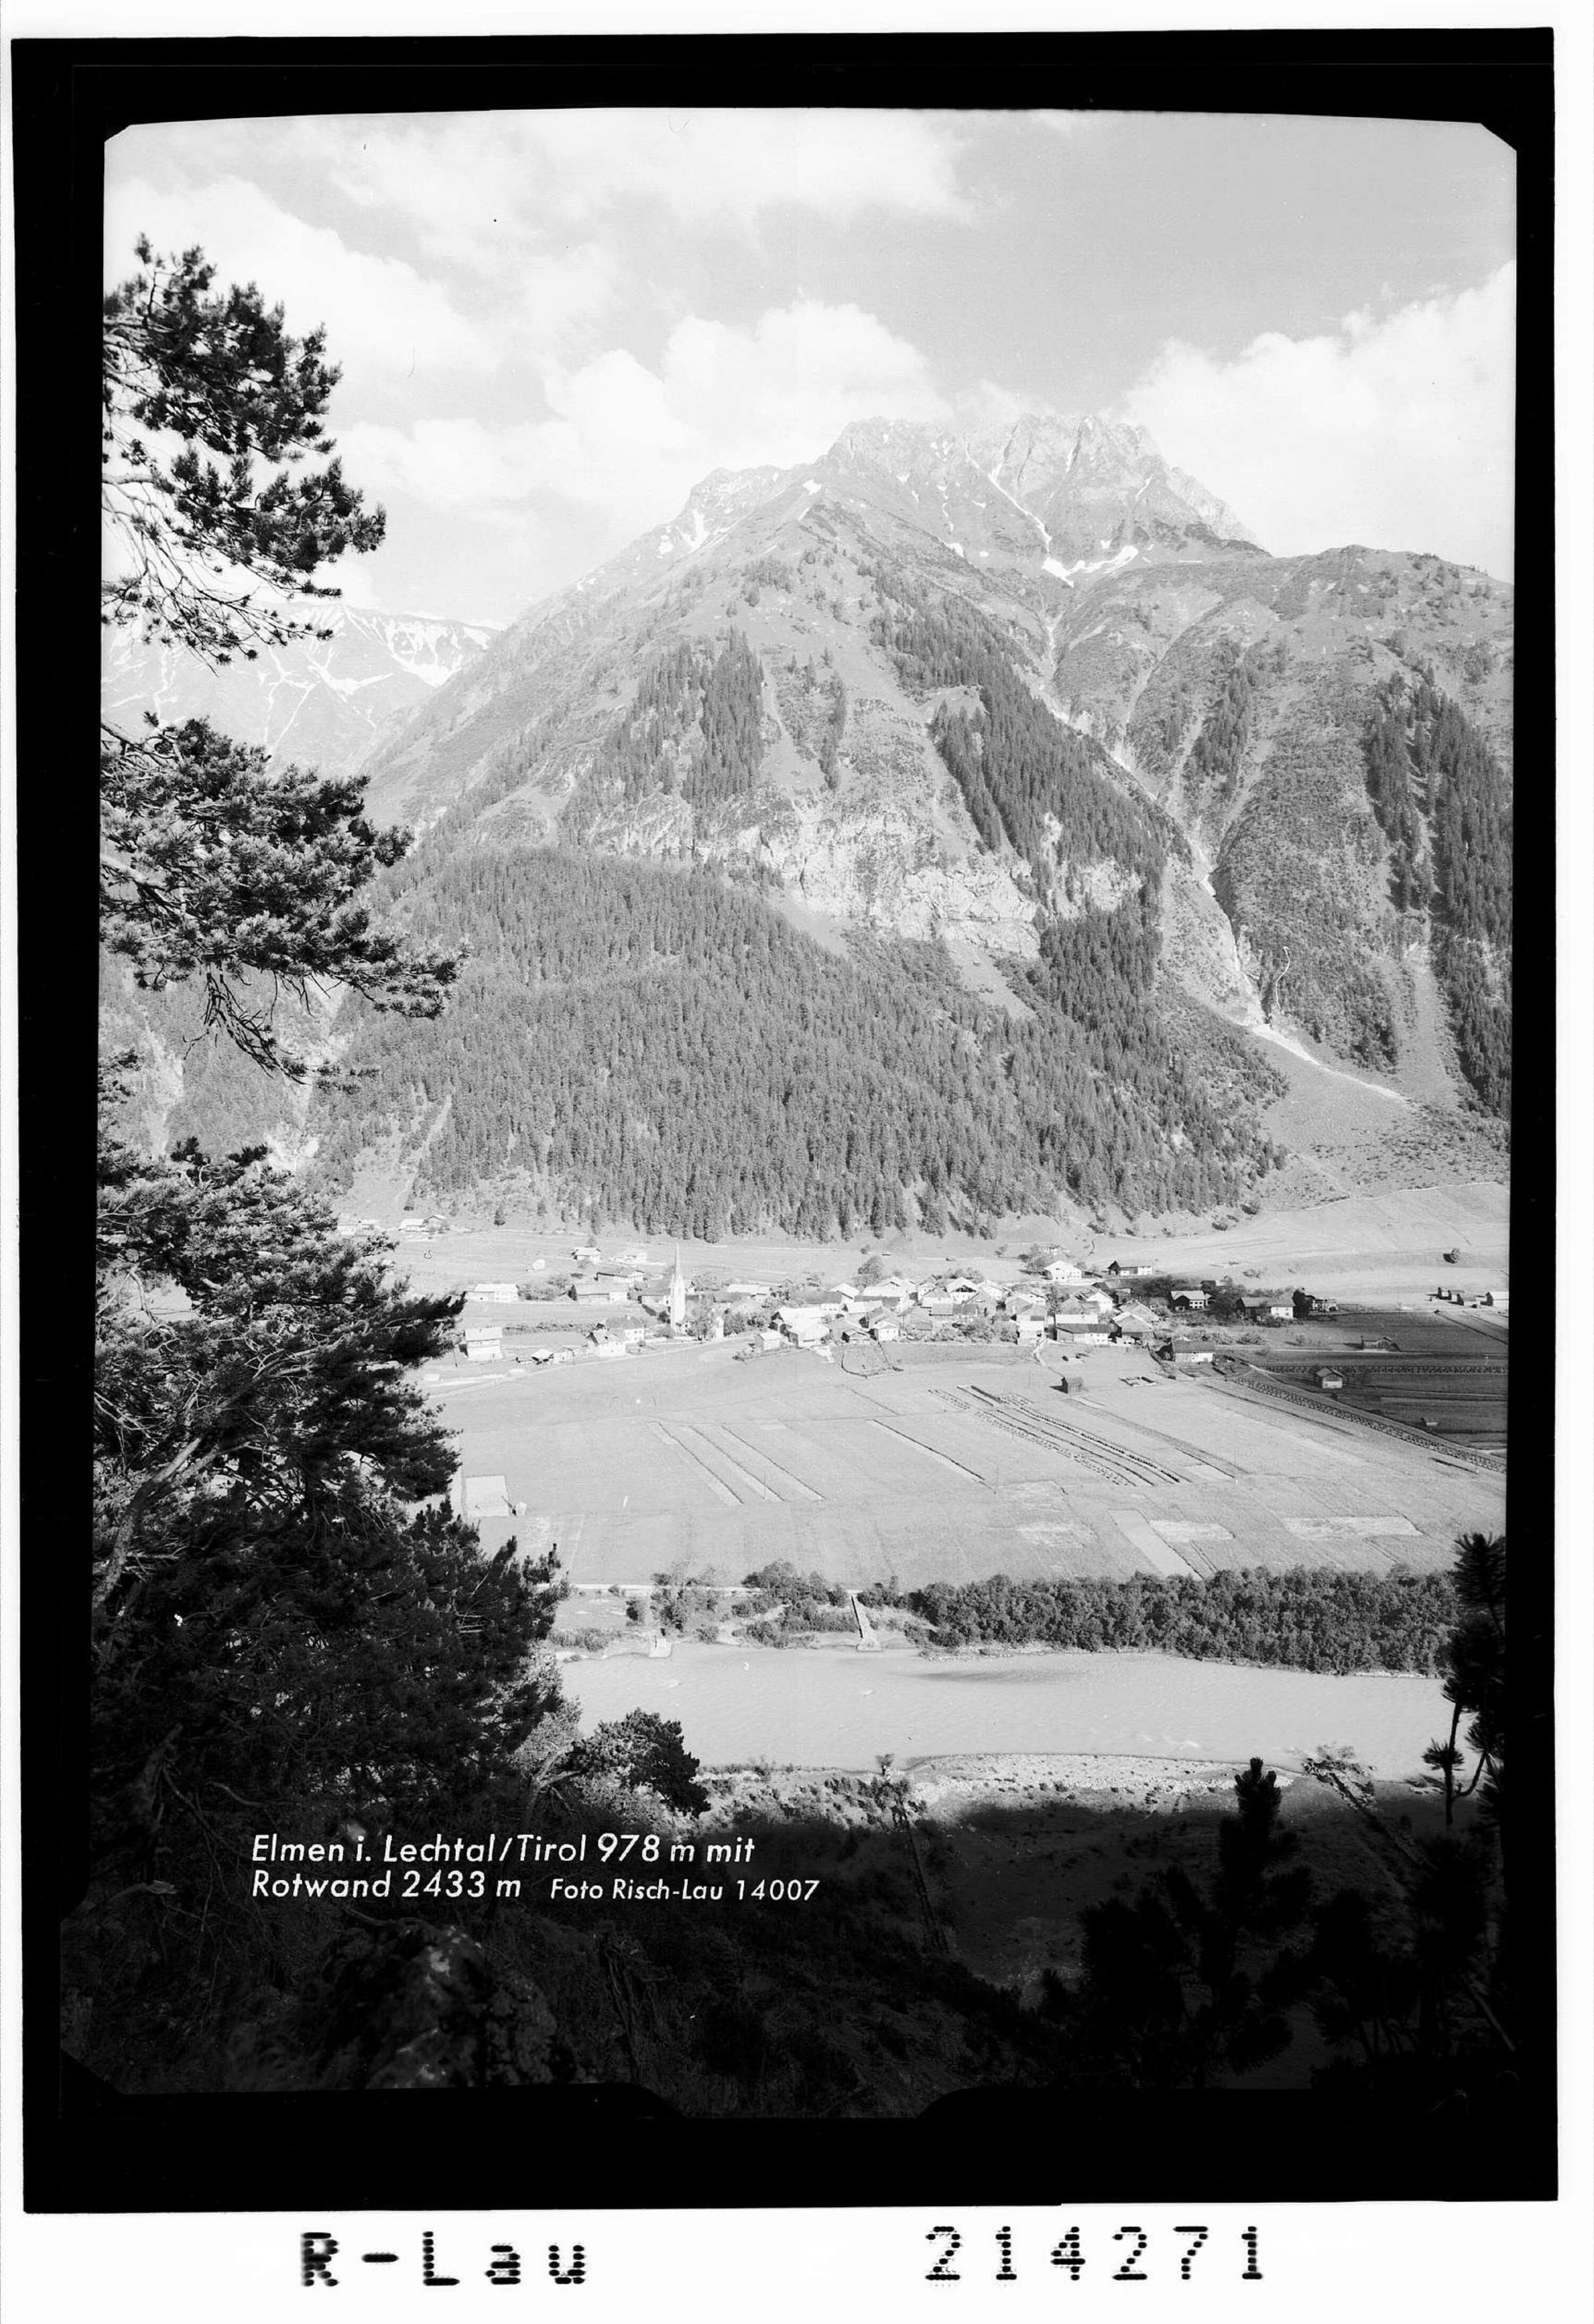 Elmen im Lechtal Tirol mit Rotwand 2433 m></div>


    <hr>
    <div class=